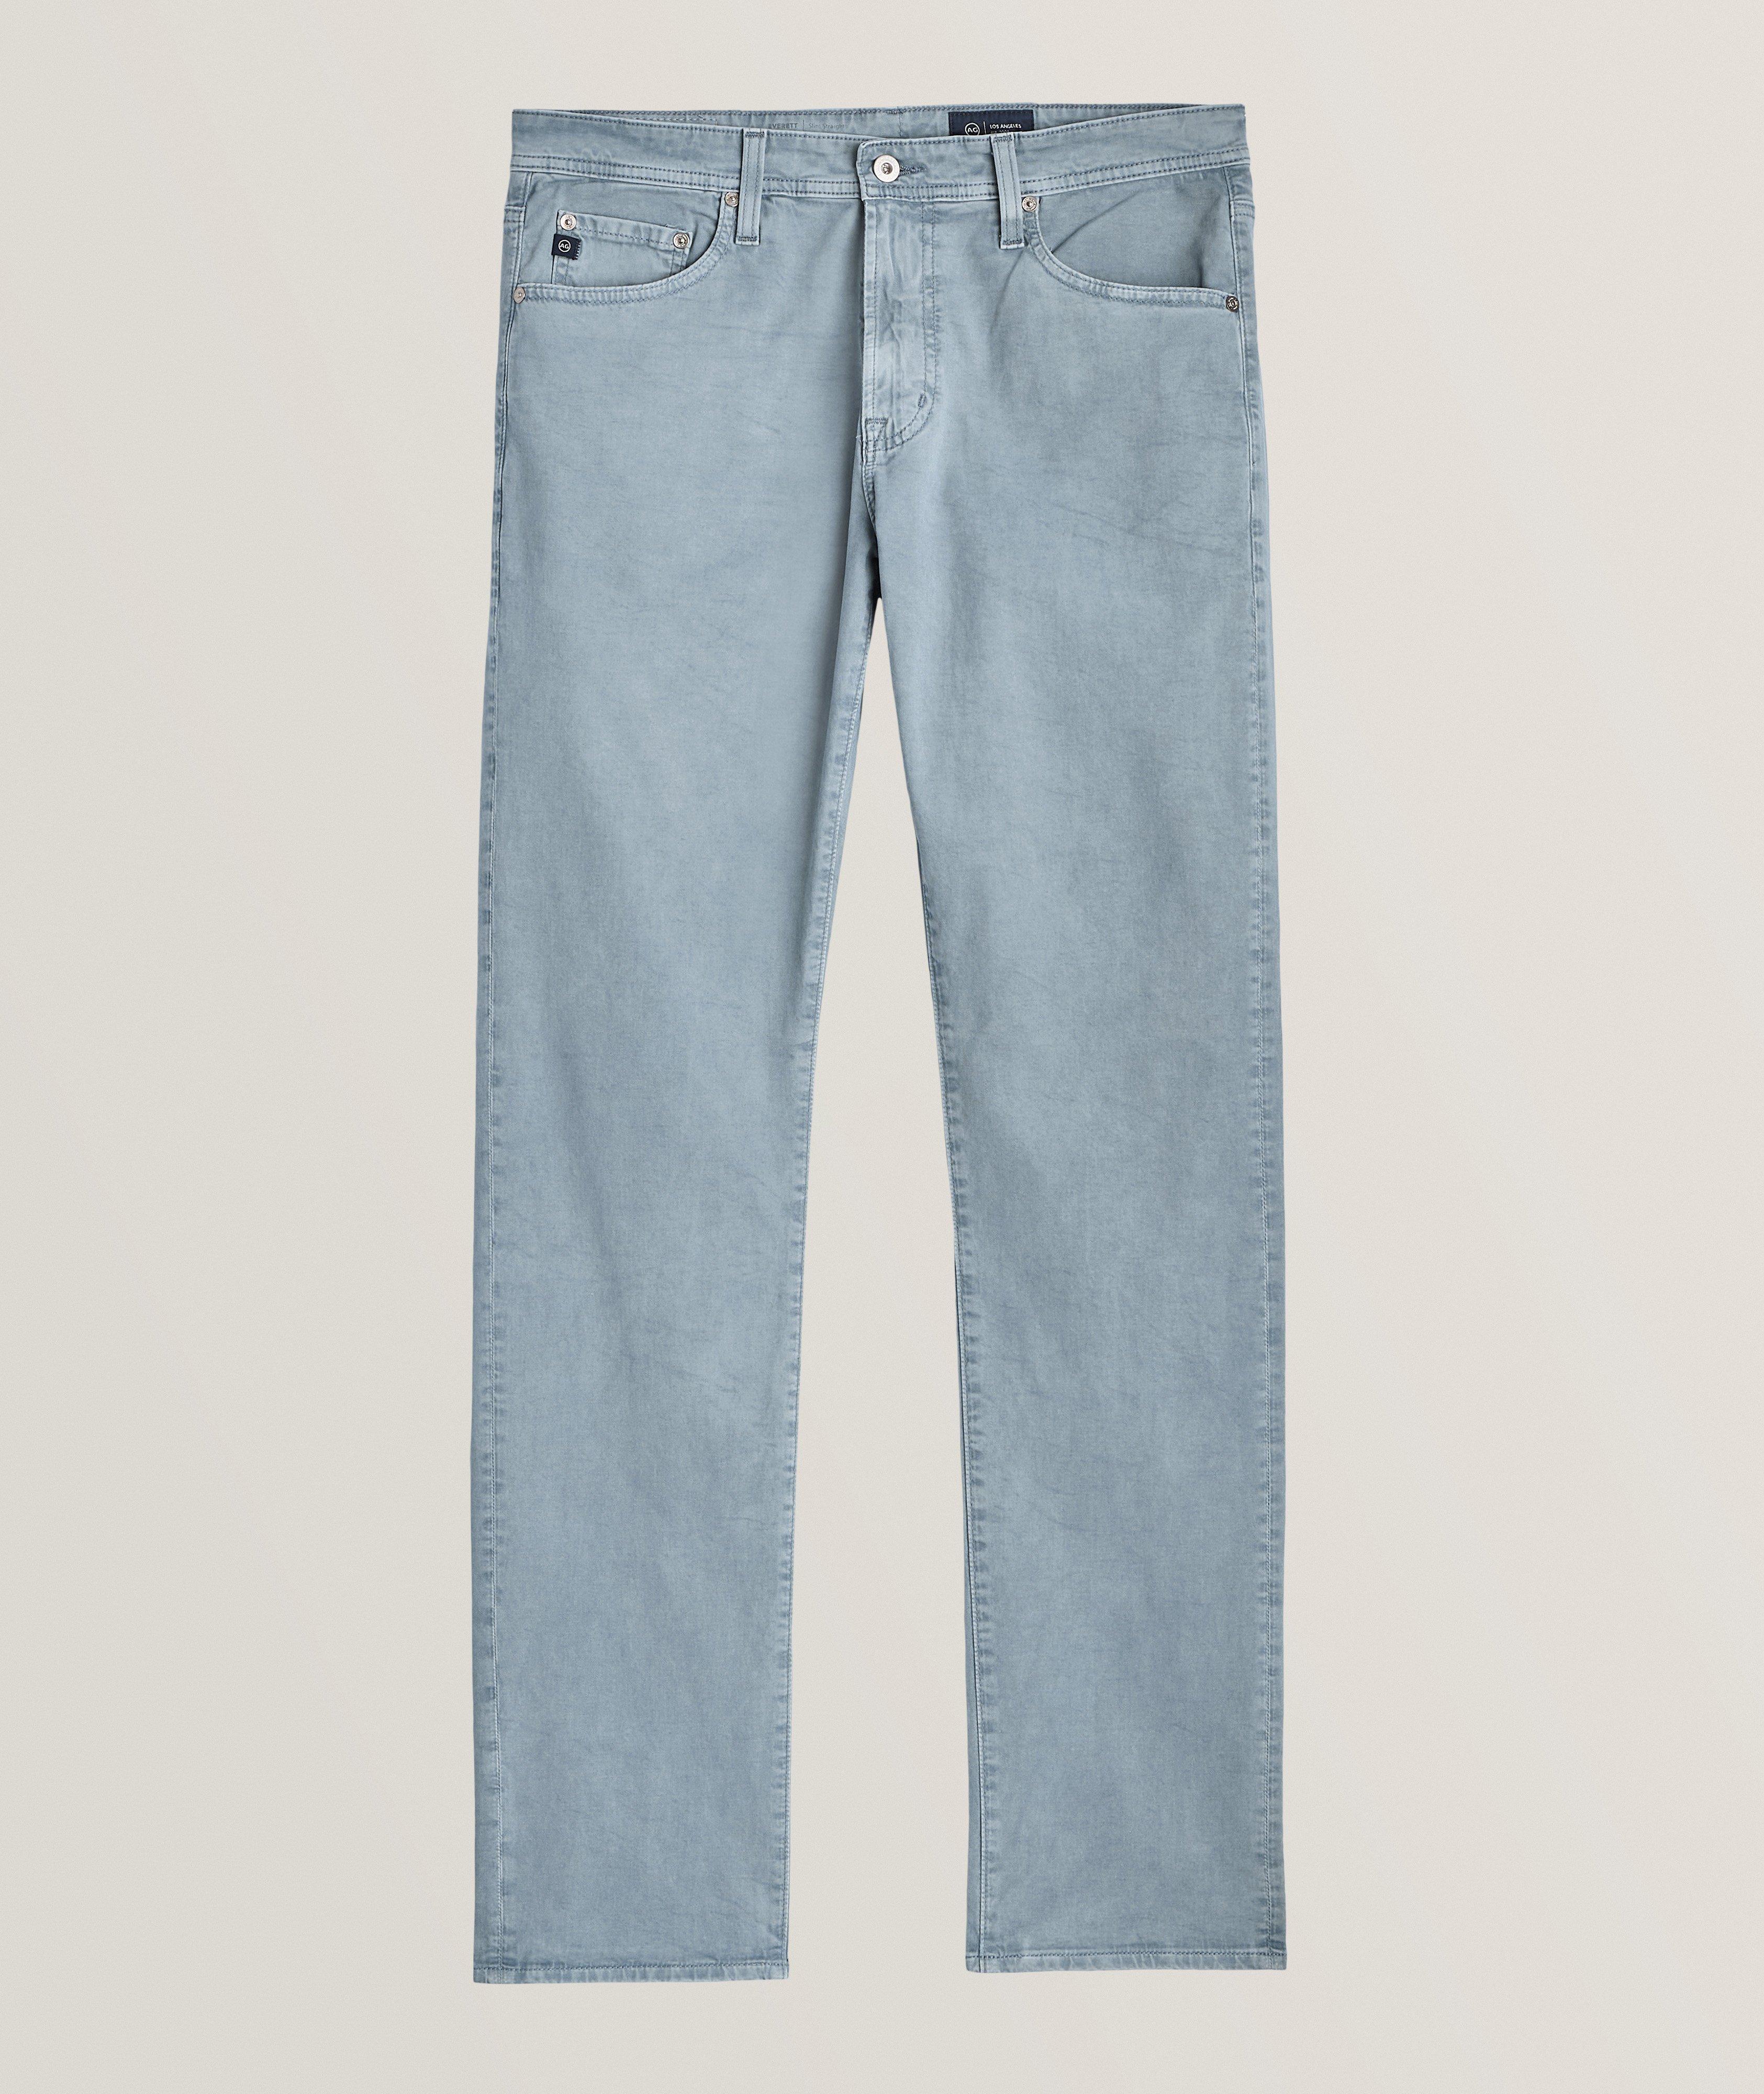 Pantalon Tellis en coton extensible de coupe moderne amincie image 0